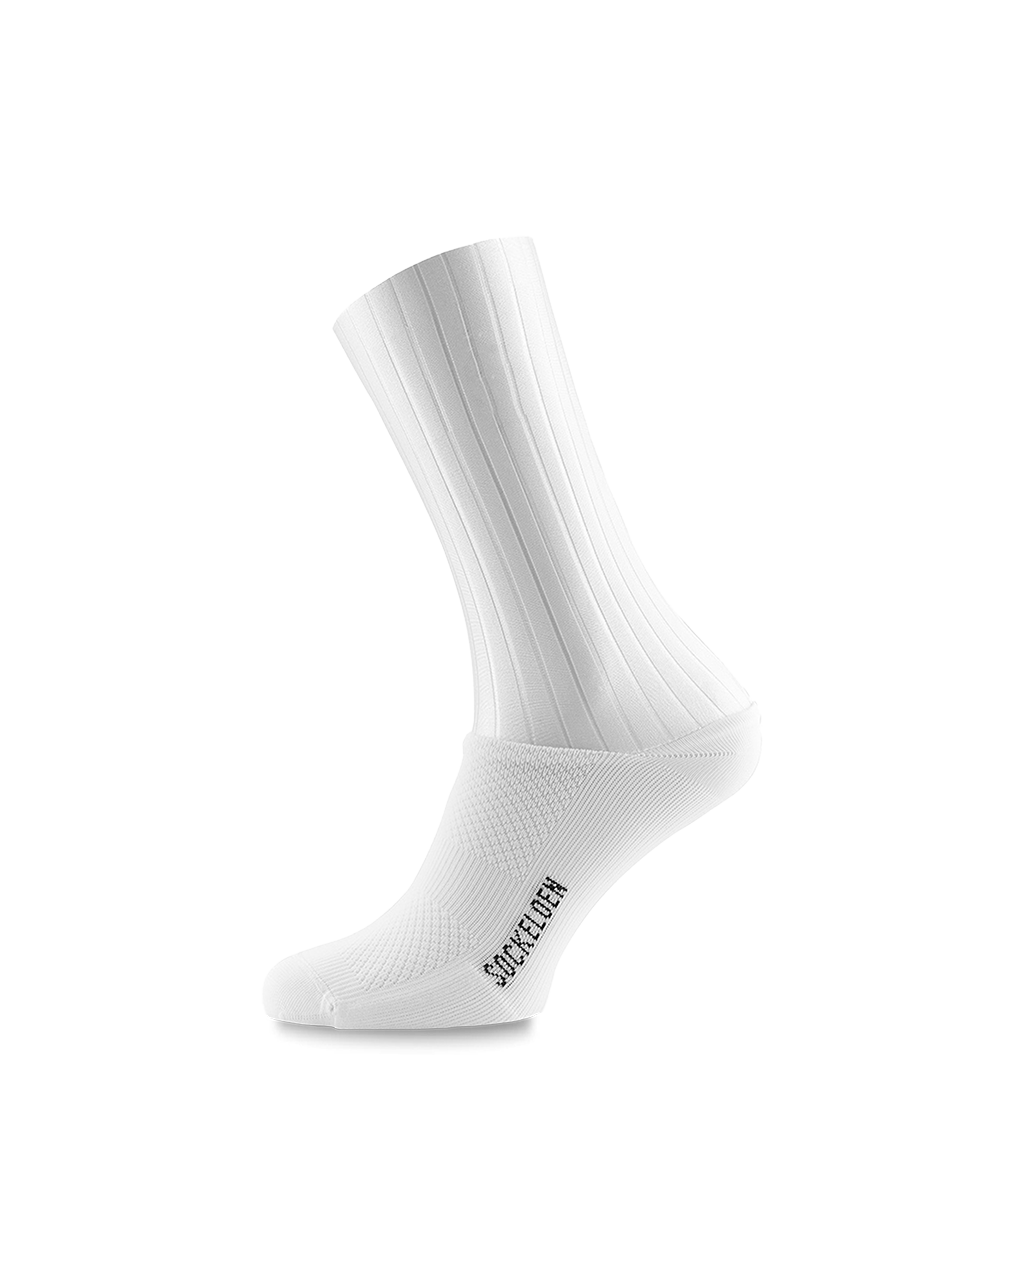 Custom Cycling Aero Socks | Sockeloen™